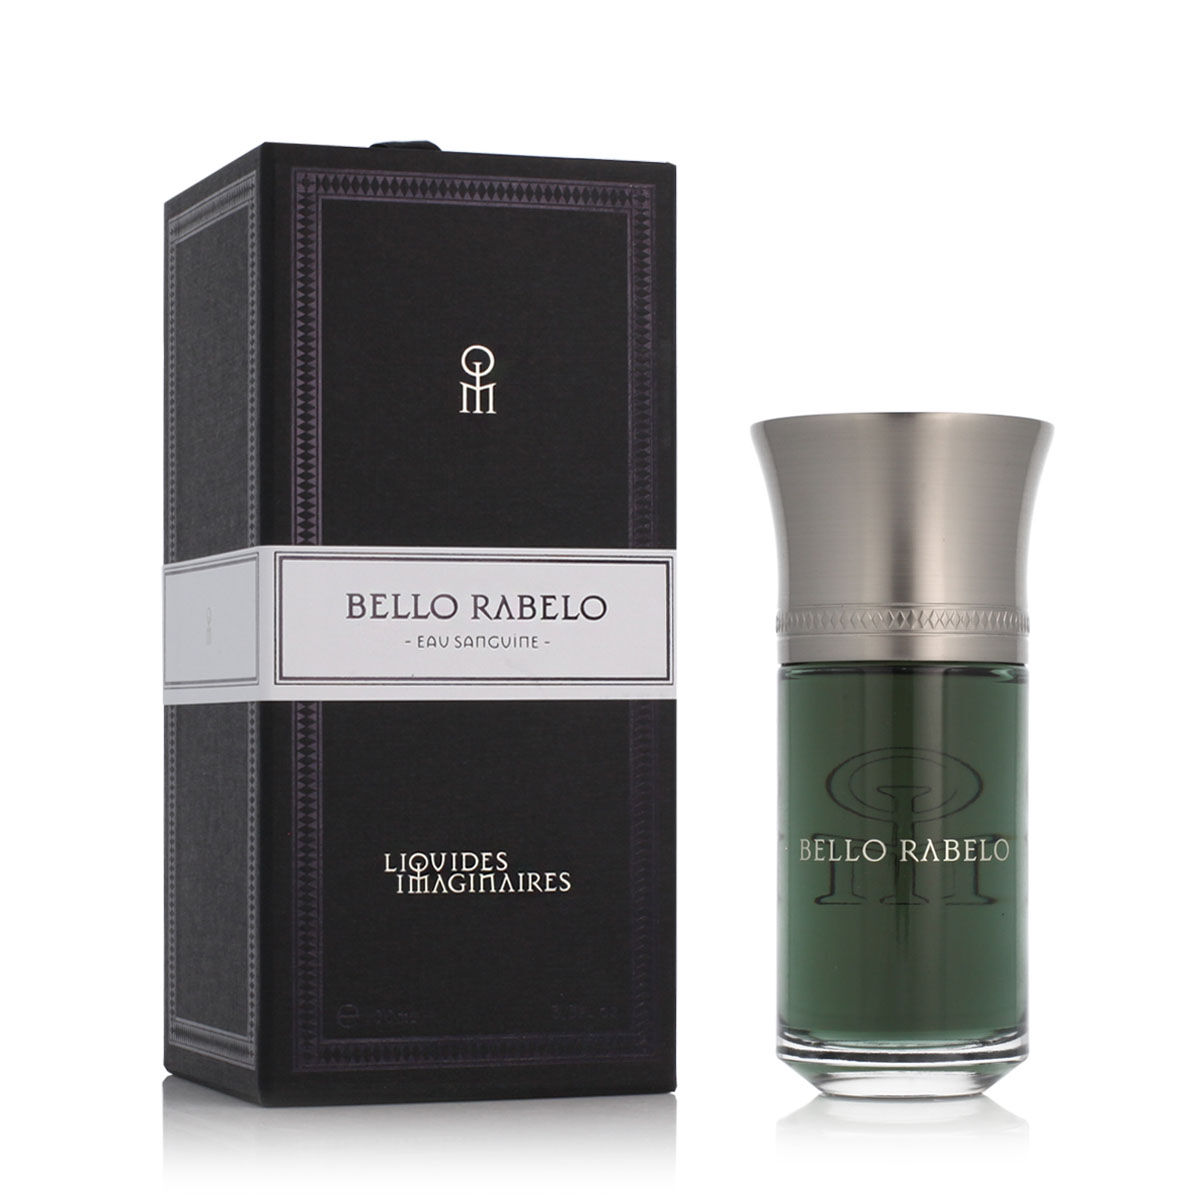 Parfum Unisex Liquides Imaginaires EDP Bello Rabelo (100 ml)